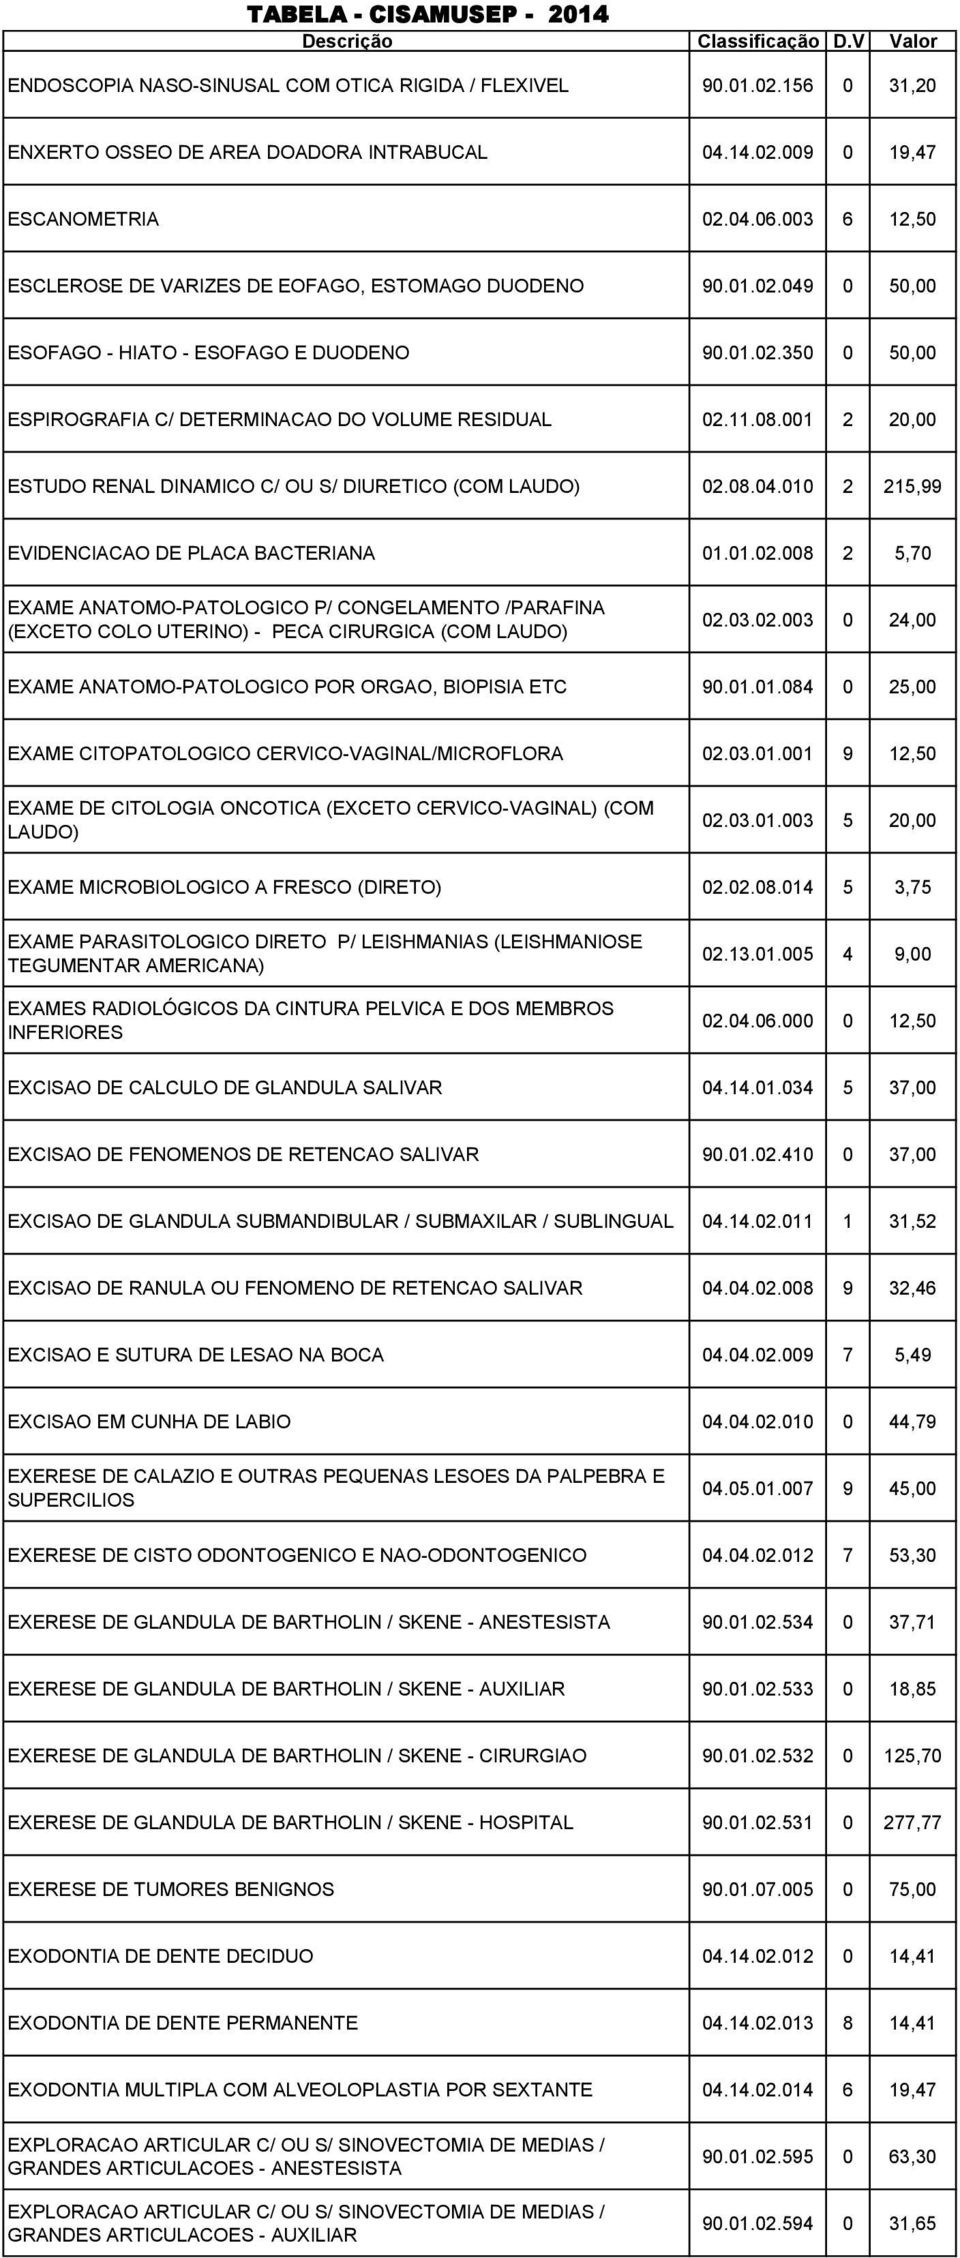 001 2 20,00 ESTUDO RENAL DINAMICO C/ OU S/ DIURETICO (COM LAUDO) 02.08.04.010 2 215,99 EVIDENCIACAO DE PLACA BACTERIANA 01.01.02.008 2 5,70 EXAME ANATOMO-PATOLOGICO P/ CONGELAMENTO /PARAFINA (EXCETO COLO UTERINO) - PECA CIRURGICA (COM LAUDO) 02.